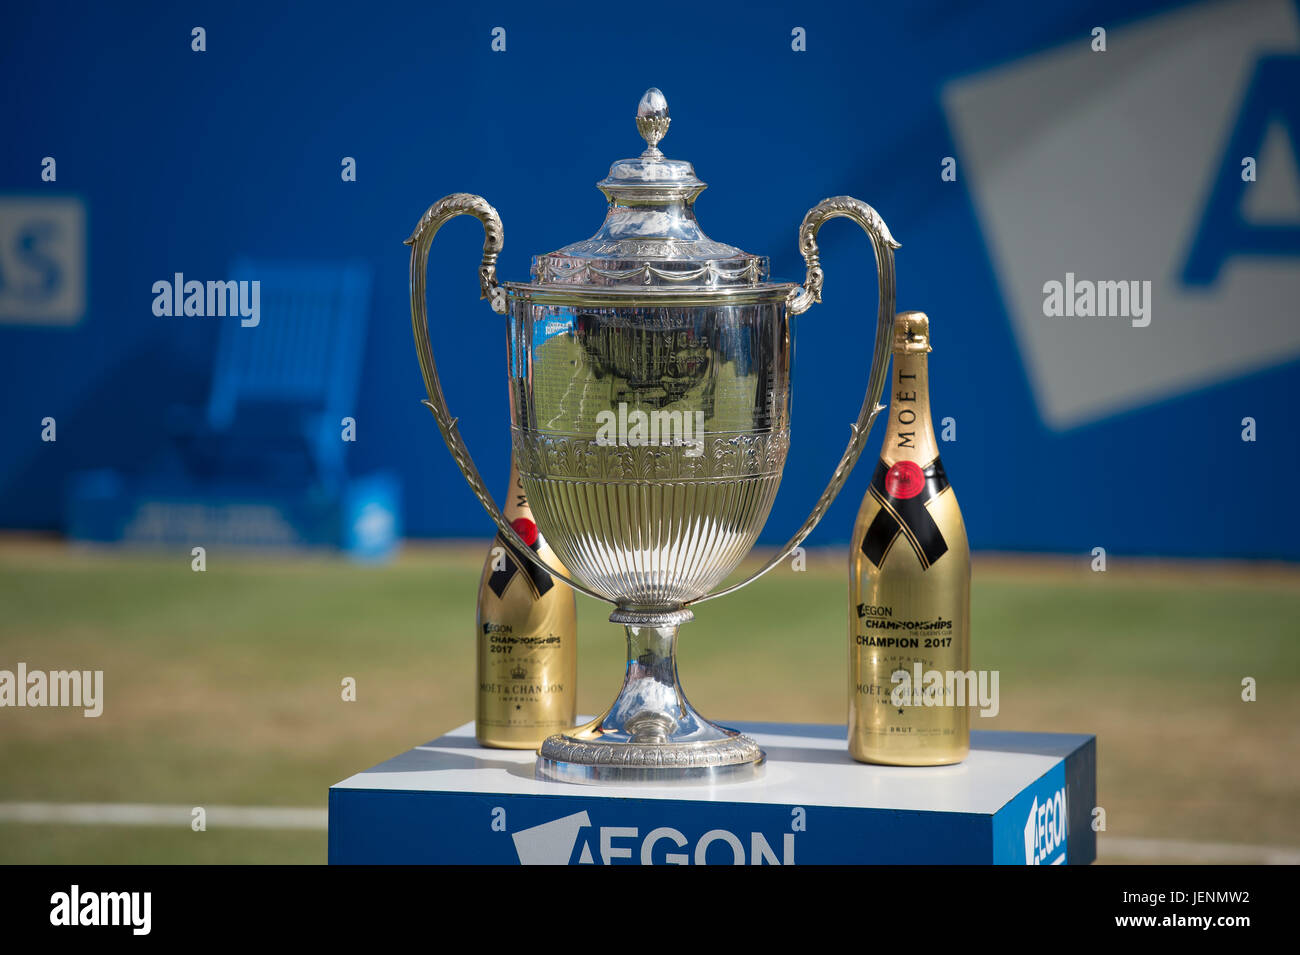 25 juin 2017. Mens finales match à l'Aegon Championships 2017, le Queen's Club, Londres Banque D'Images